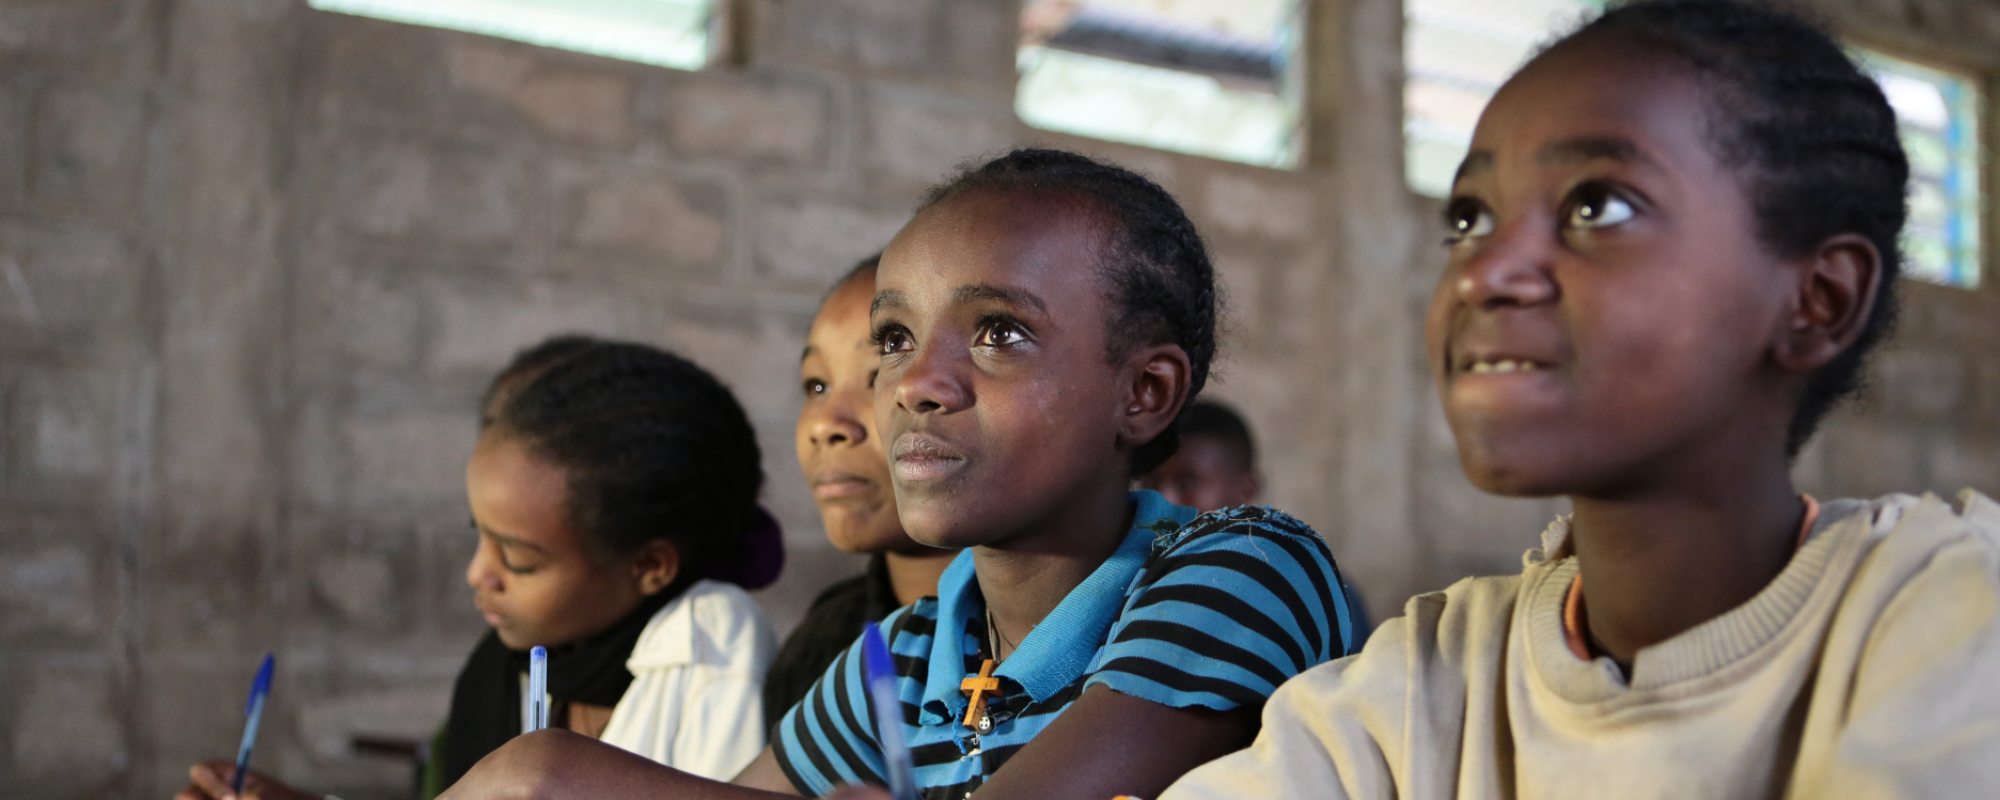 Children in school in Ethiopia